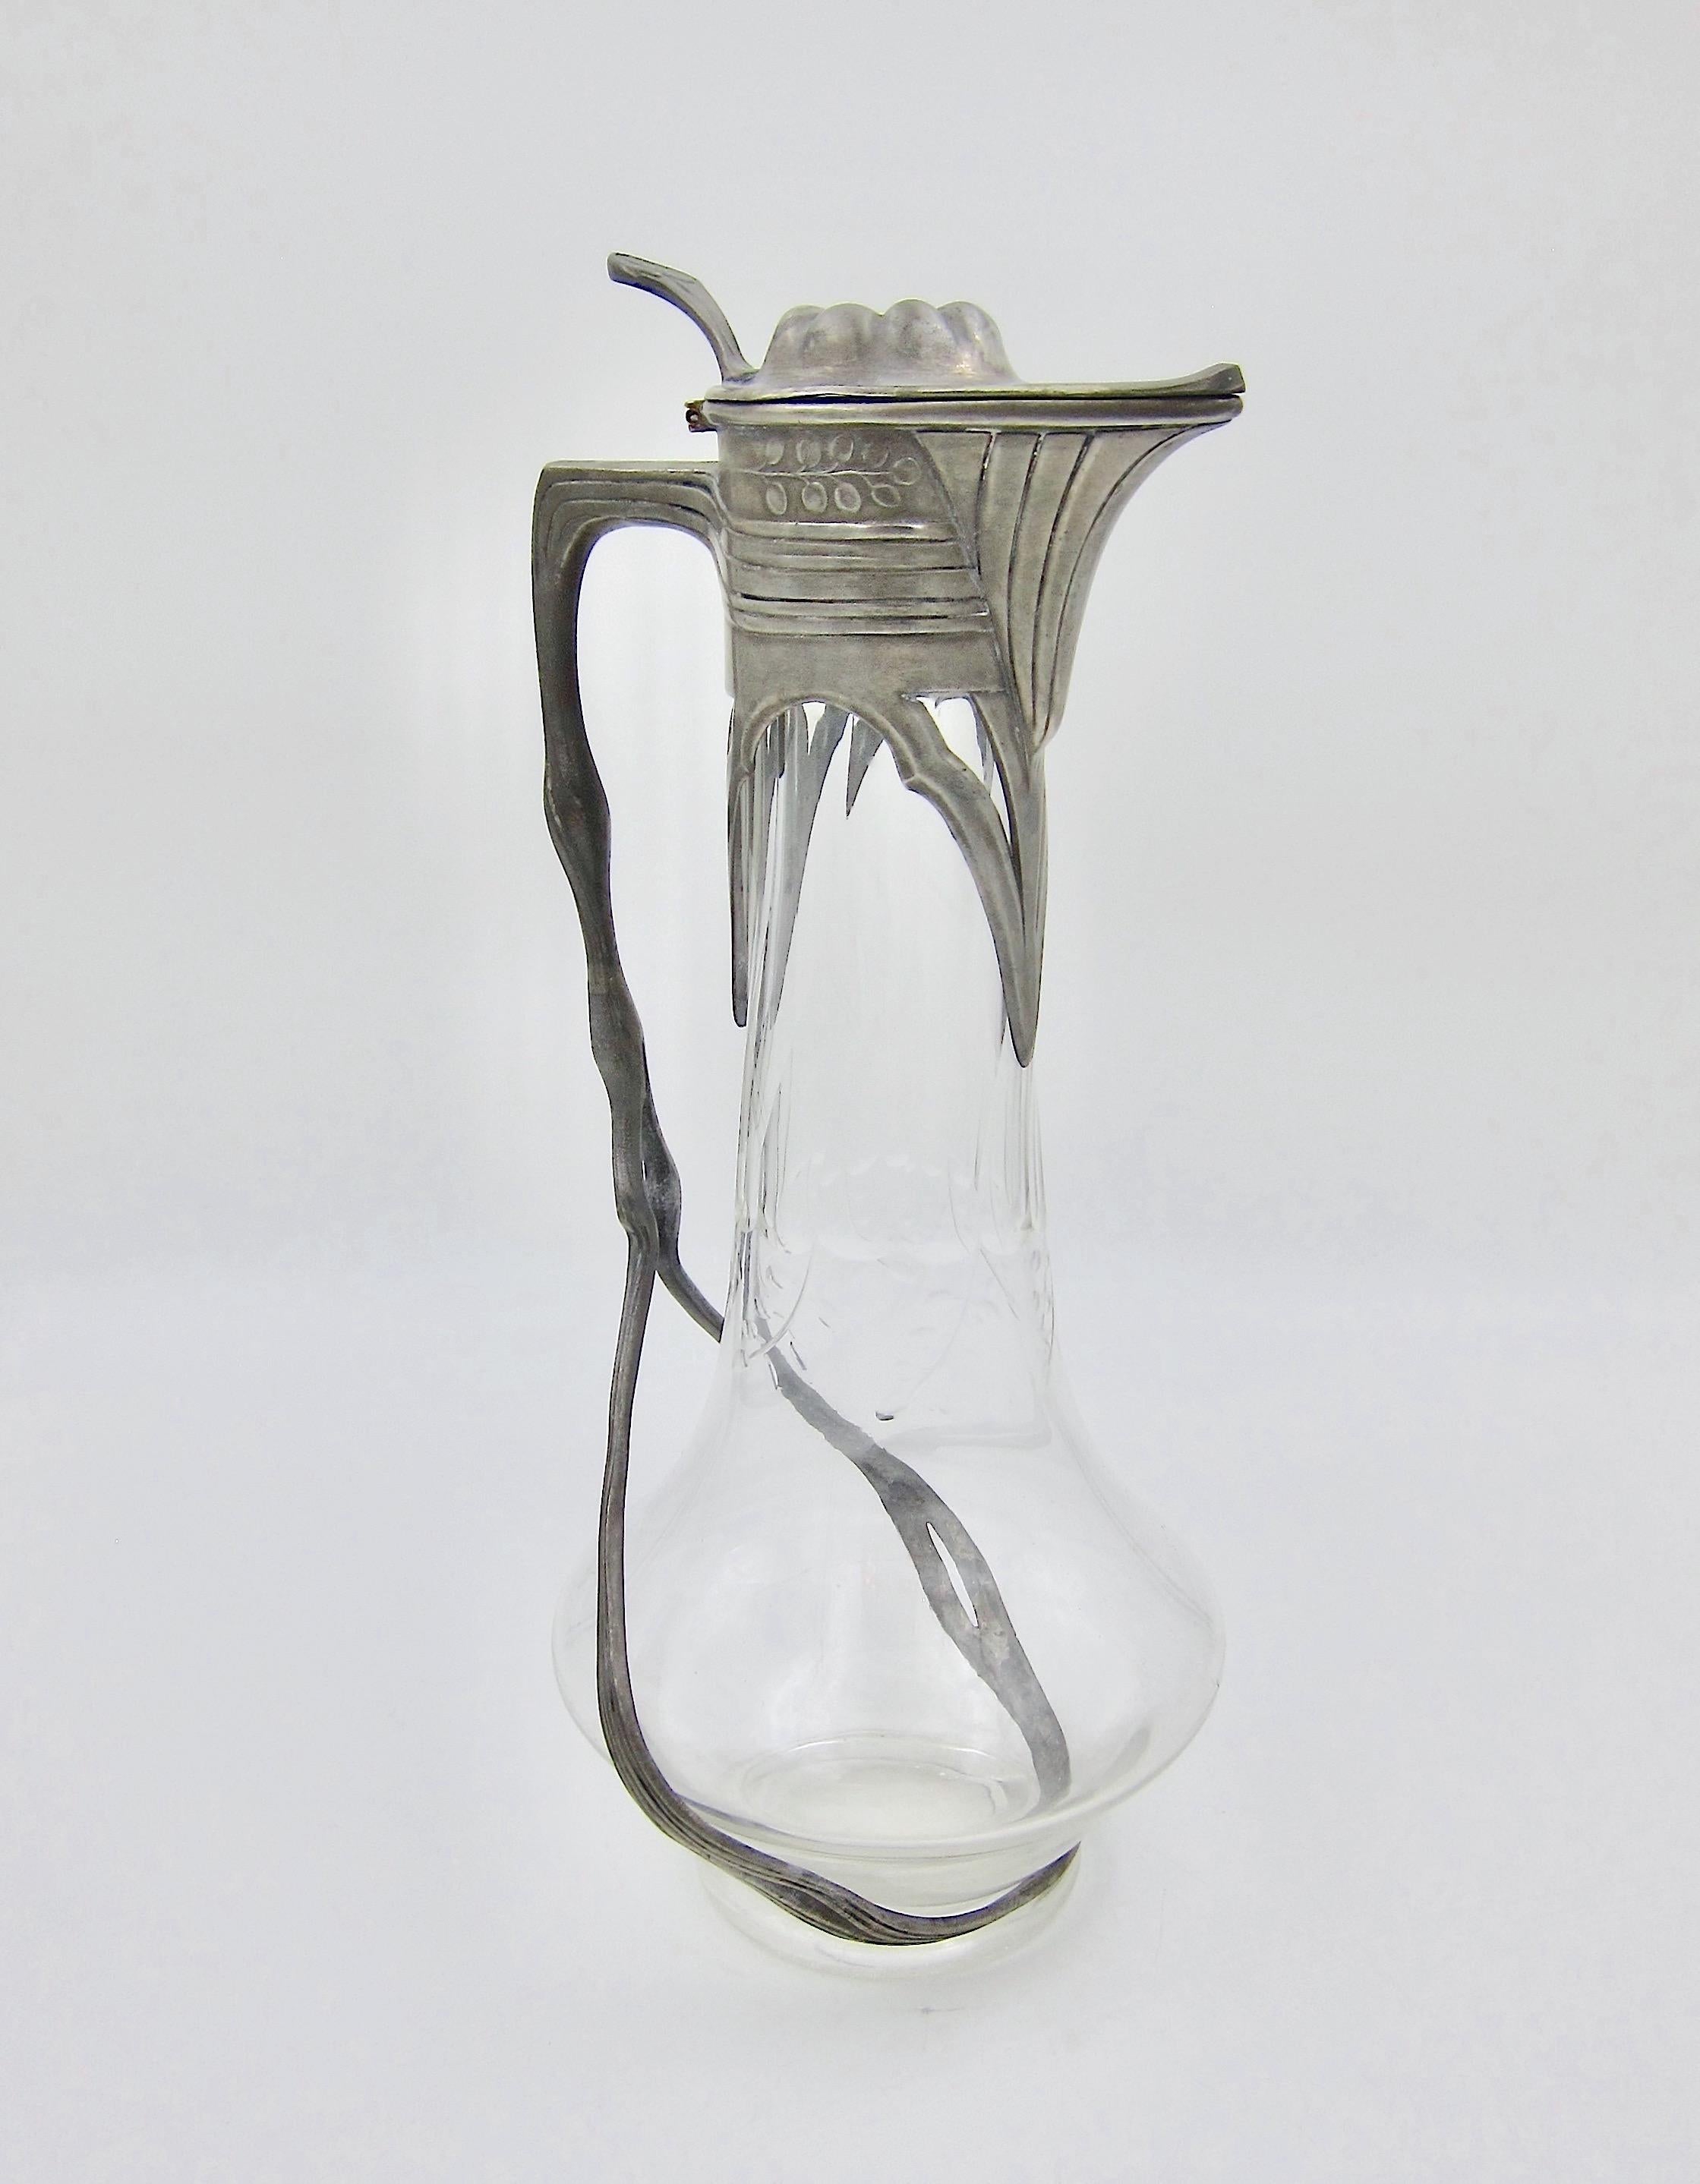 Jugendstil Orivit Art Nouveau Claret Jug in Pewter and Cut Glass